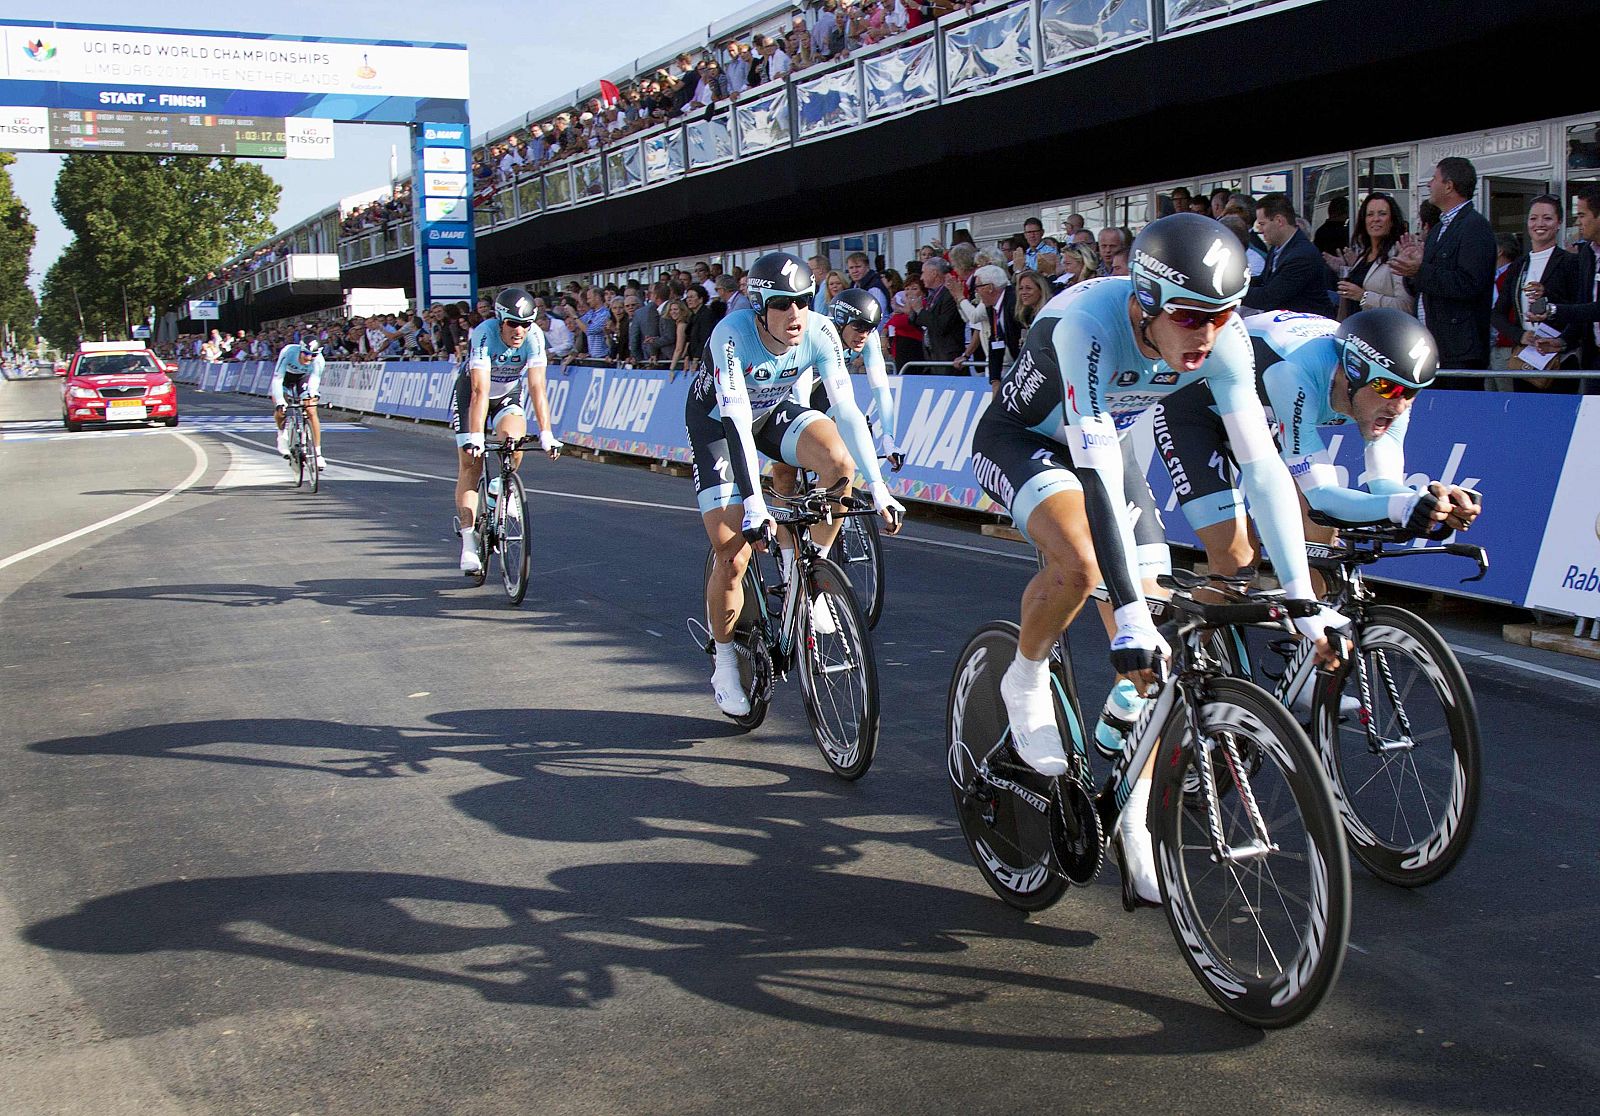 Los corredores del equipo belga Omega Pharma-Quick Step cruzan la línea de meta del mundial contrarreloj por equipo disputado en Valkenburg, Holanda.